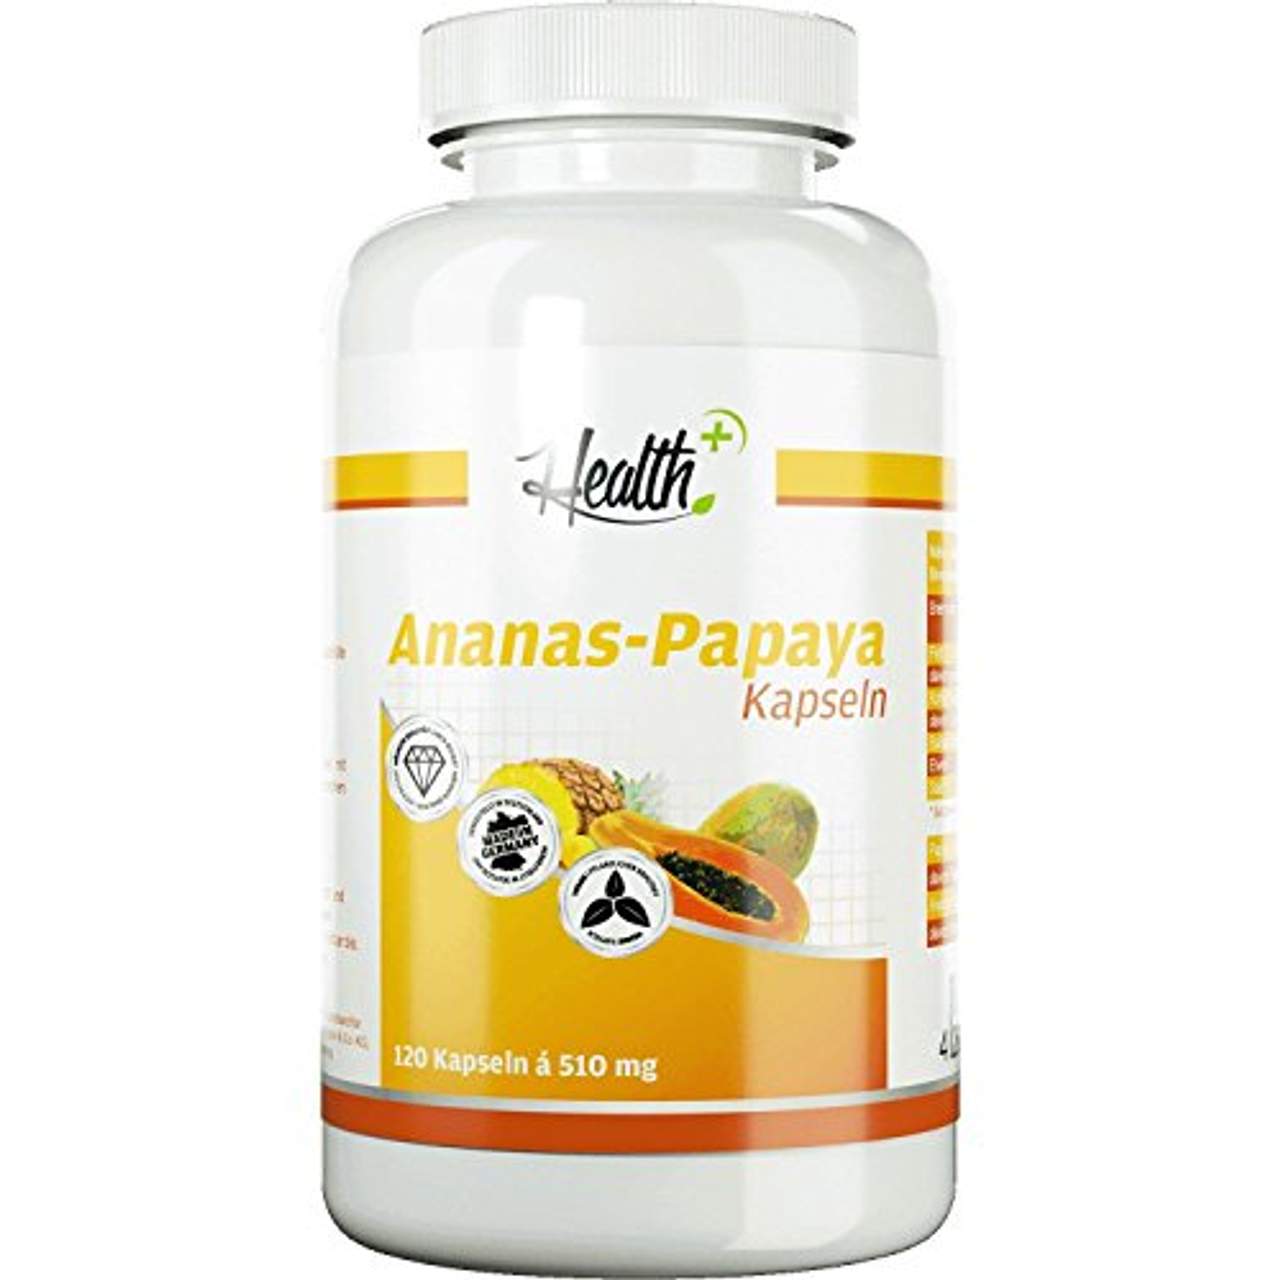 Zec+ Nutrition Health+ Ananas-Papaya Kapseln